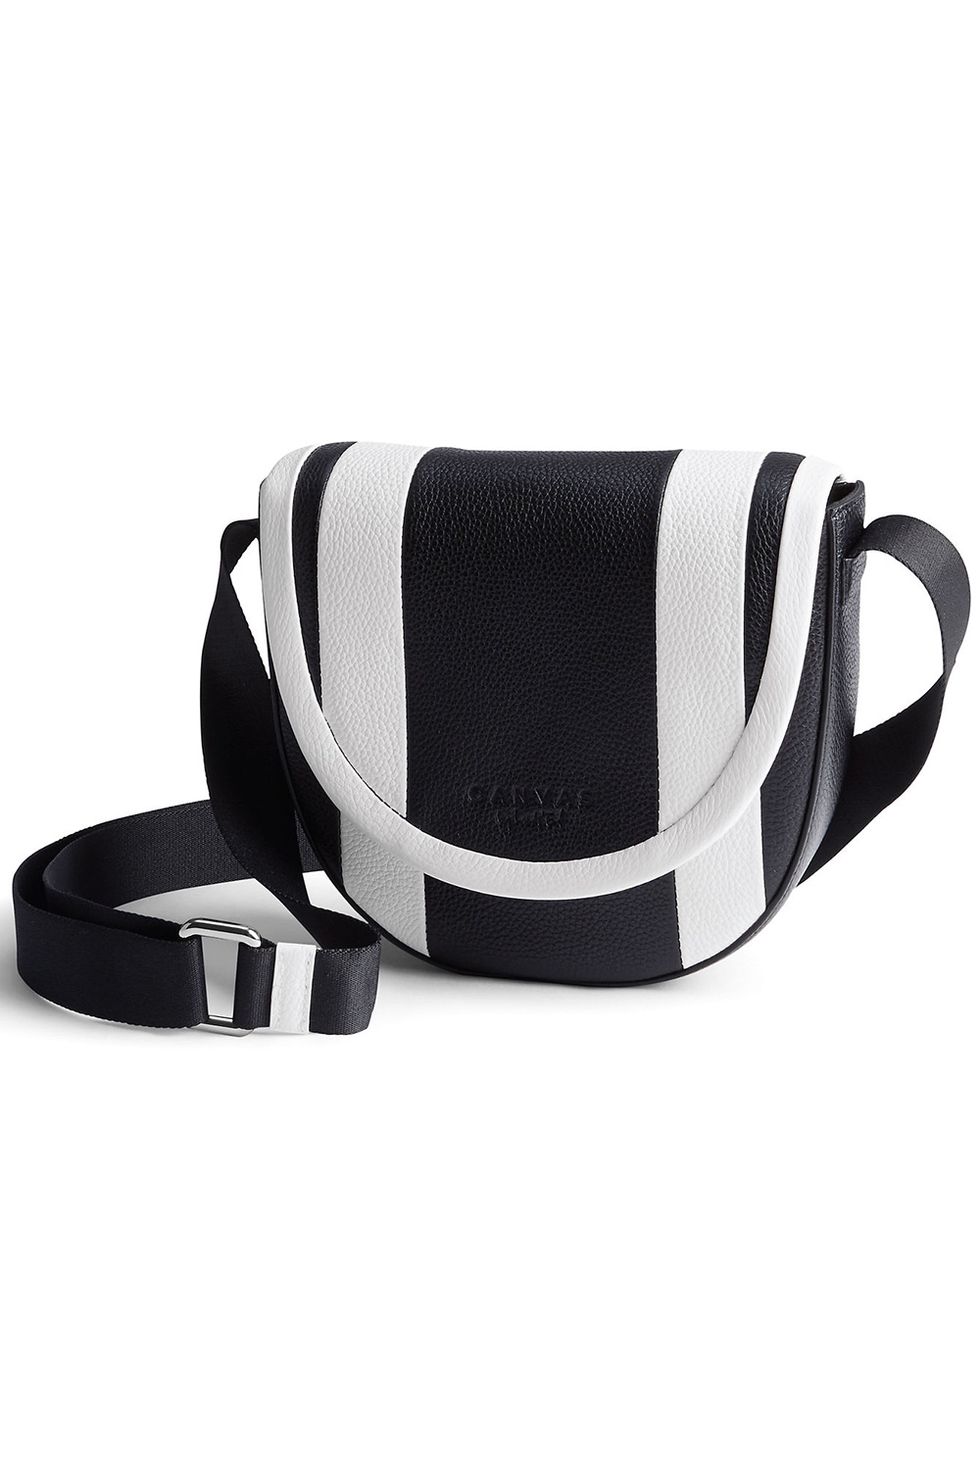 Bag, Messenger bag, Product, Belt, Fashion accessory, Handbag, Luggage and bags, Shoulder bag, Leather, Strap, 